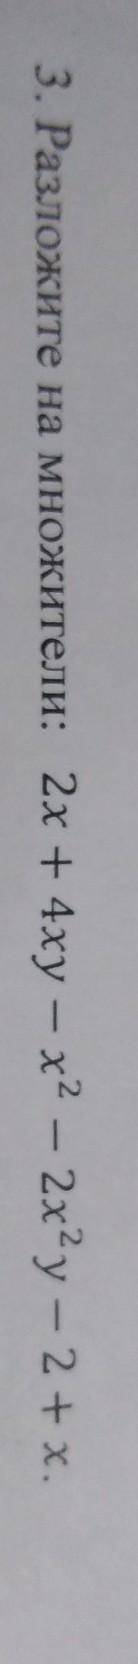 3. Разложите на множители: 2x+4xy-x^2-2x^2y-2+x